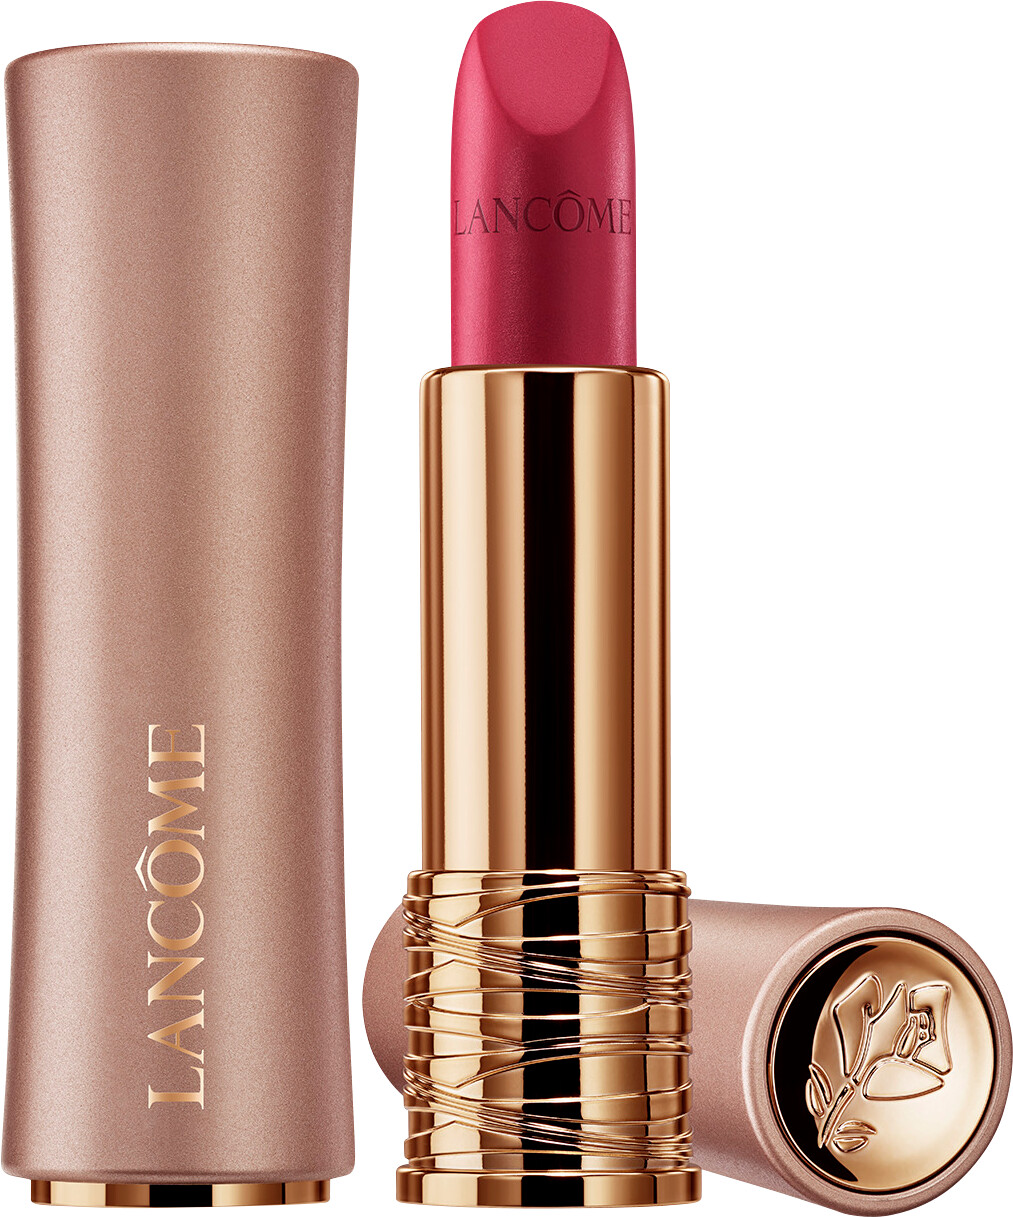 Lancome L'Absolu Rouge Intimatte Soft Matte Lipstick 3.4g 352 - Rose Fondu